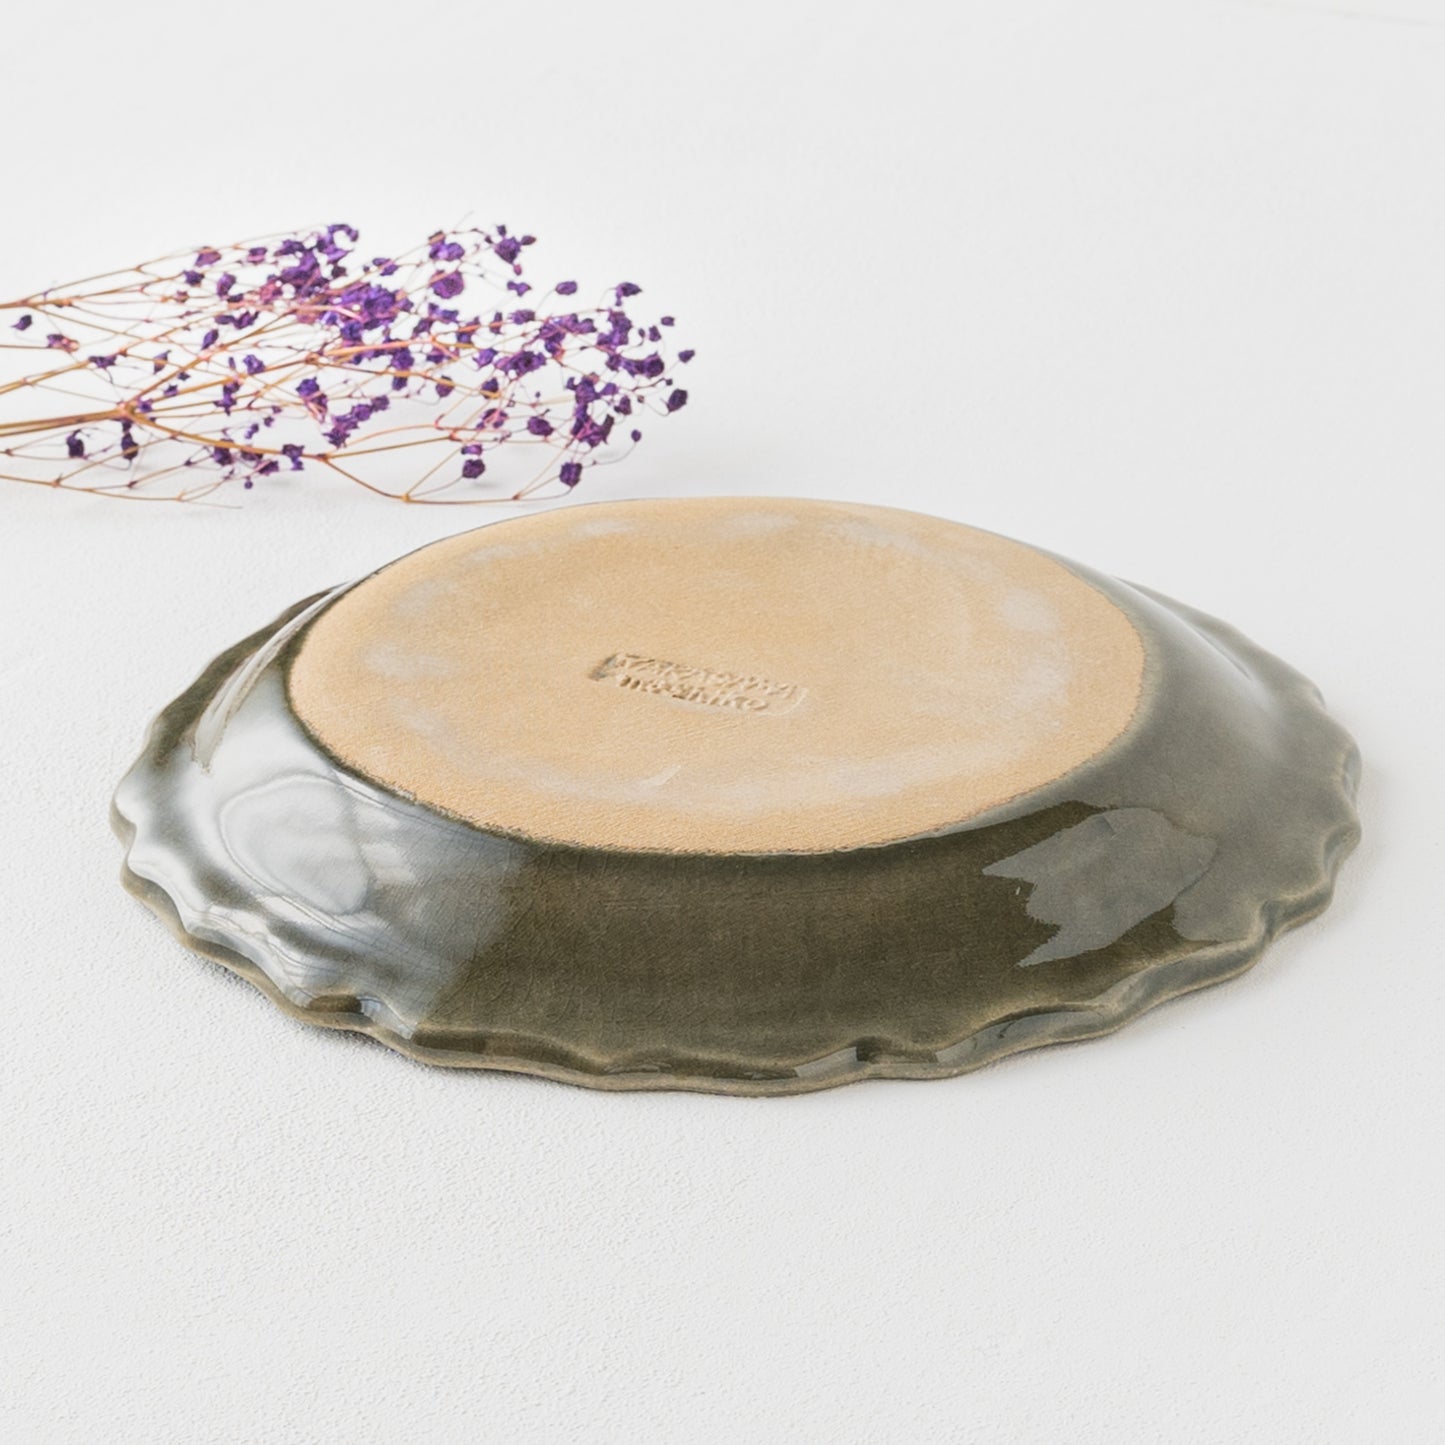 Wakasama-Pottery Studio French Lace Plate L